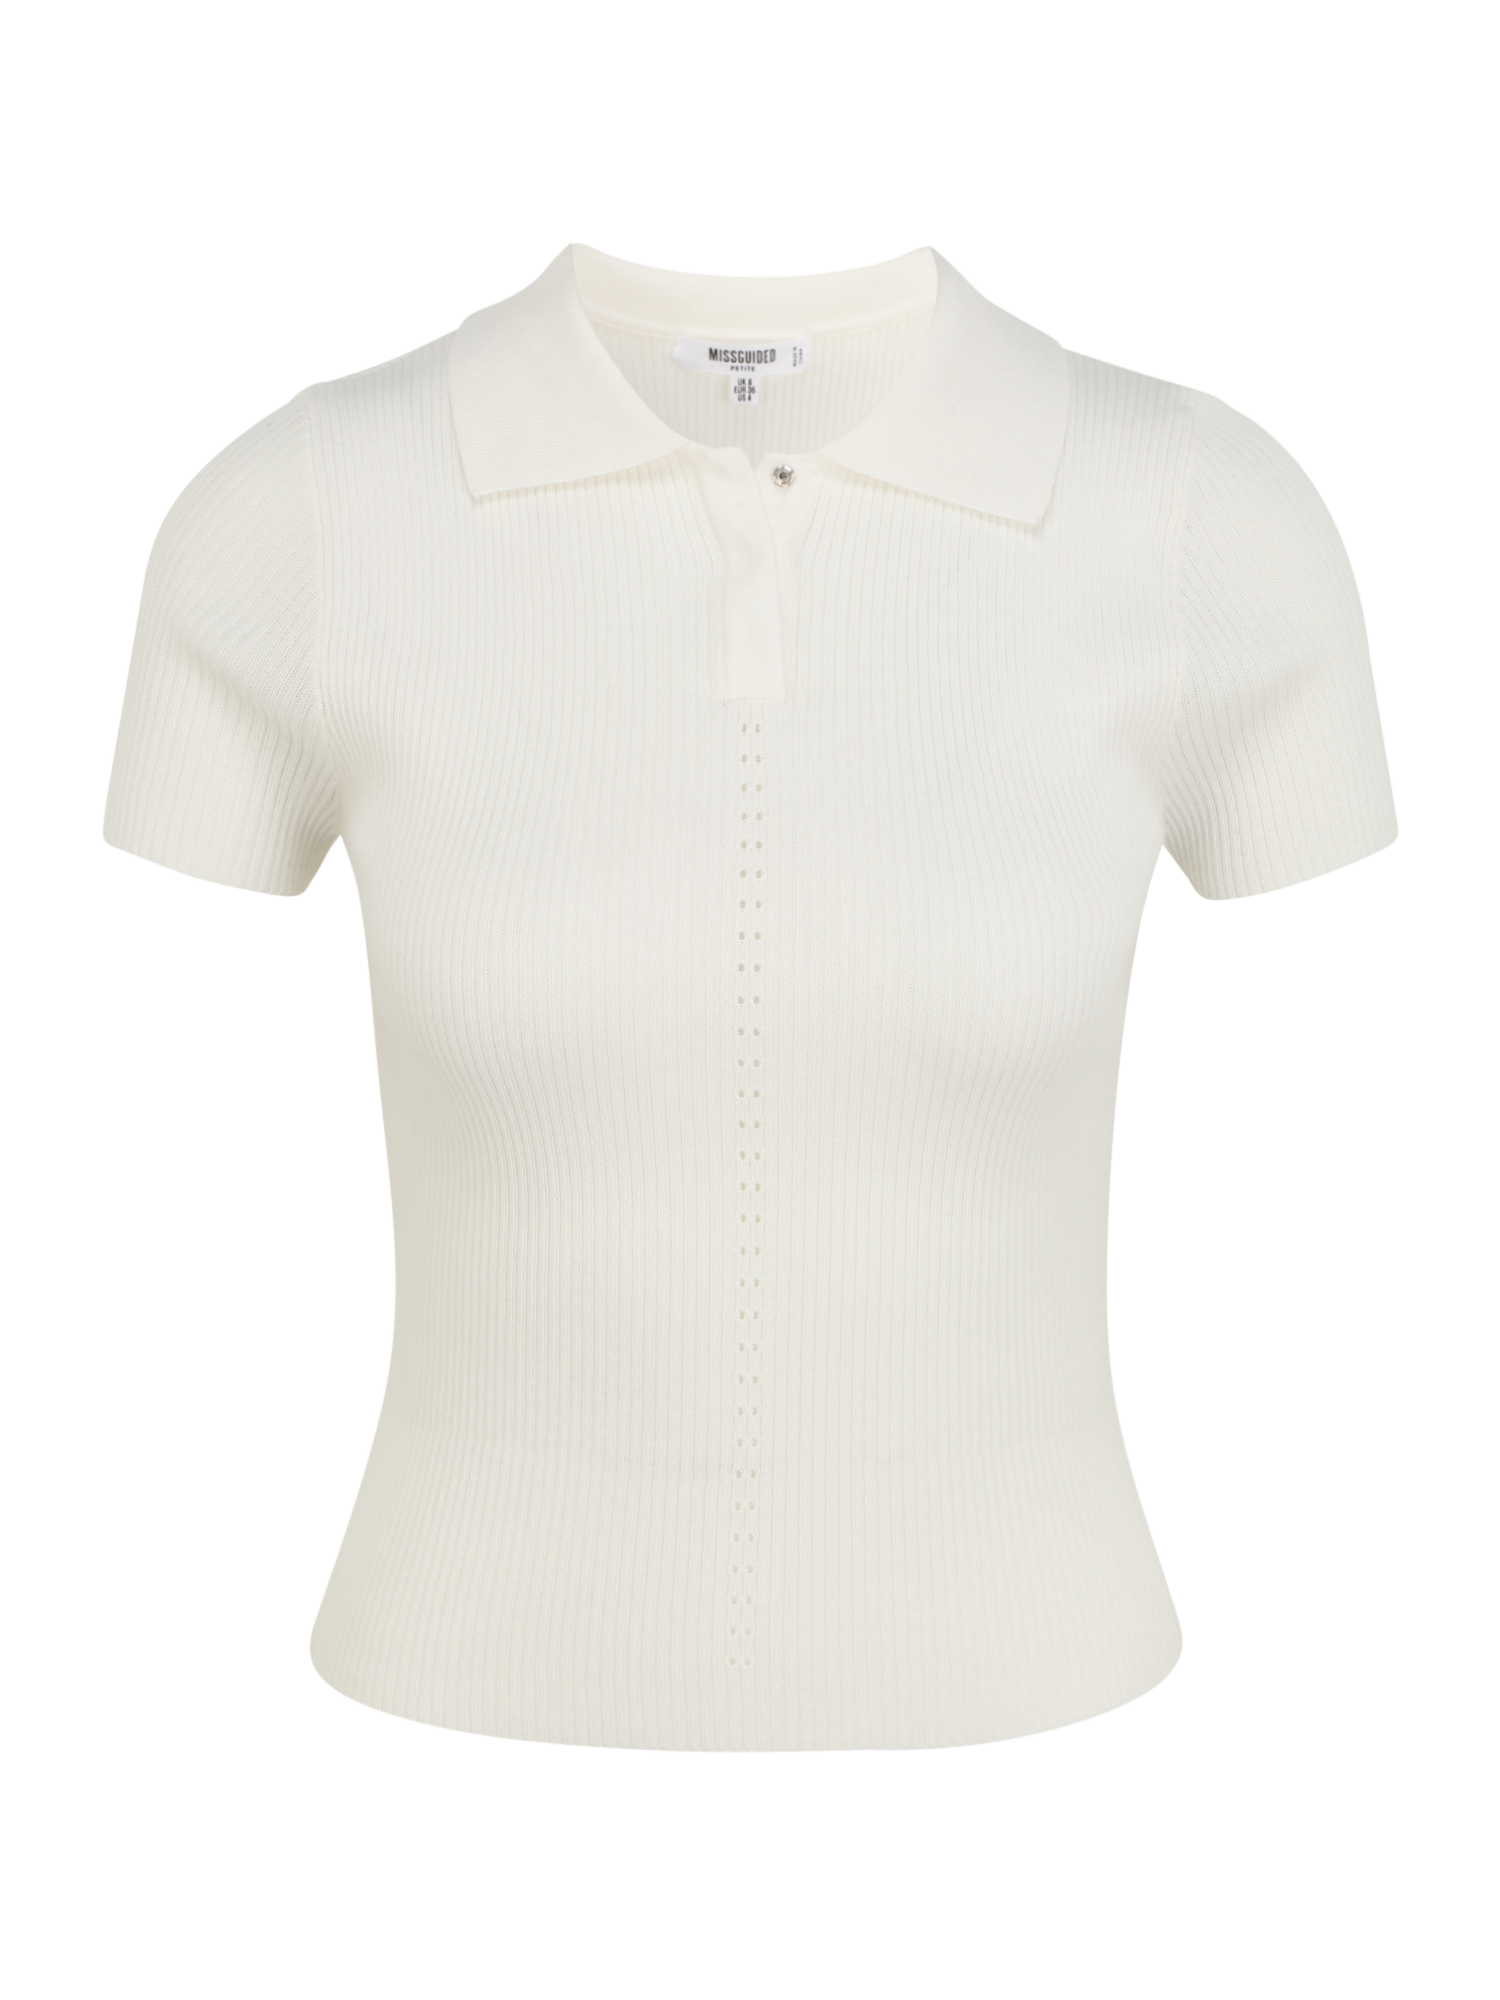 Plus size Odzież Missguided Petite Koszulka w kolorze Naturalna Bielm 